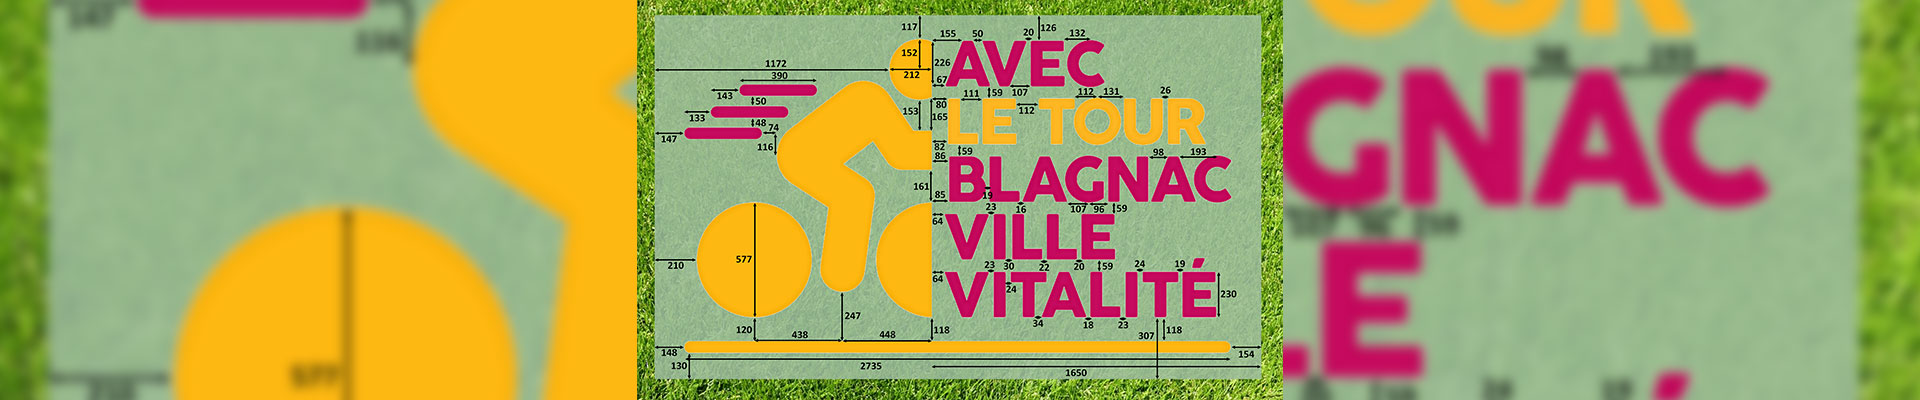 Logotipo monumental Tour de Francia, comunicación, comunidad, empresa